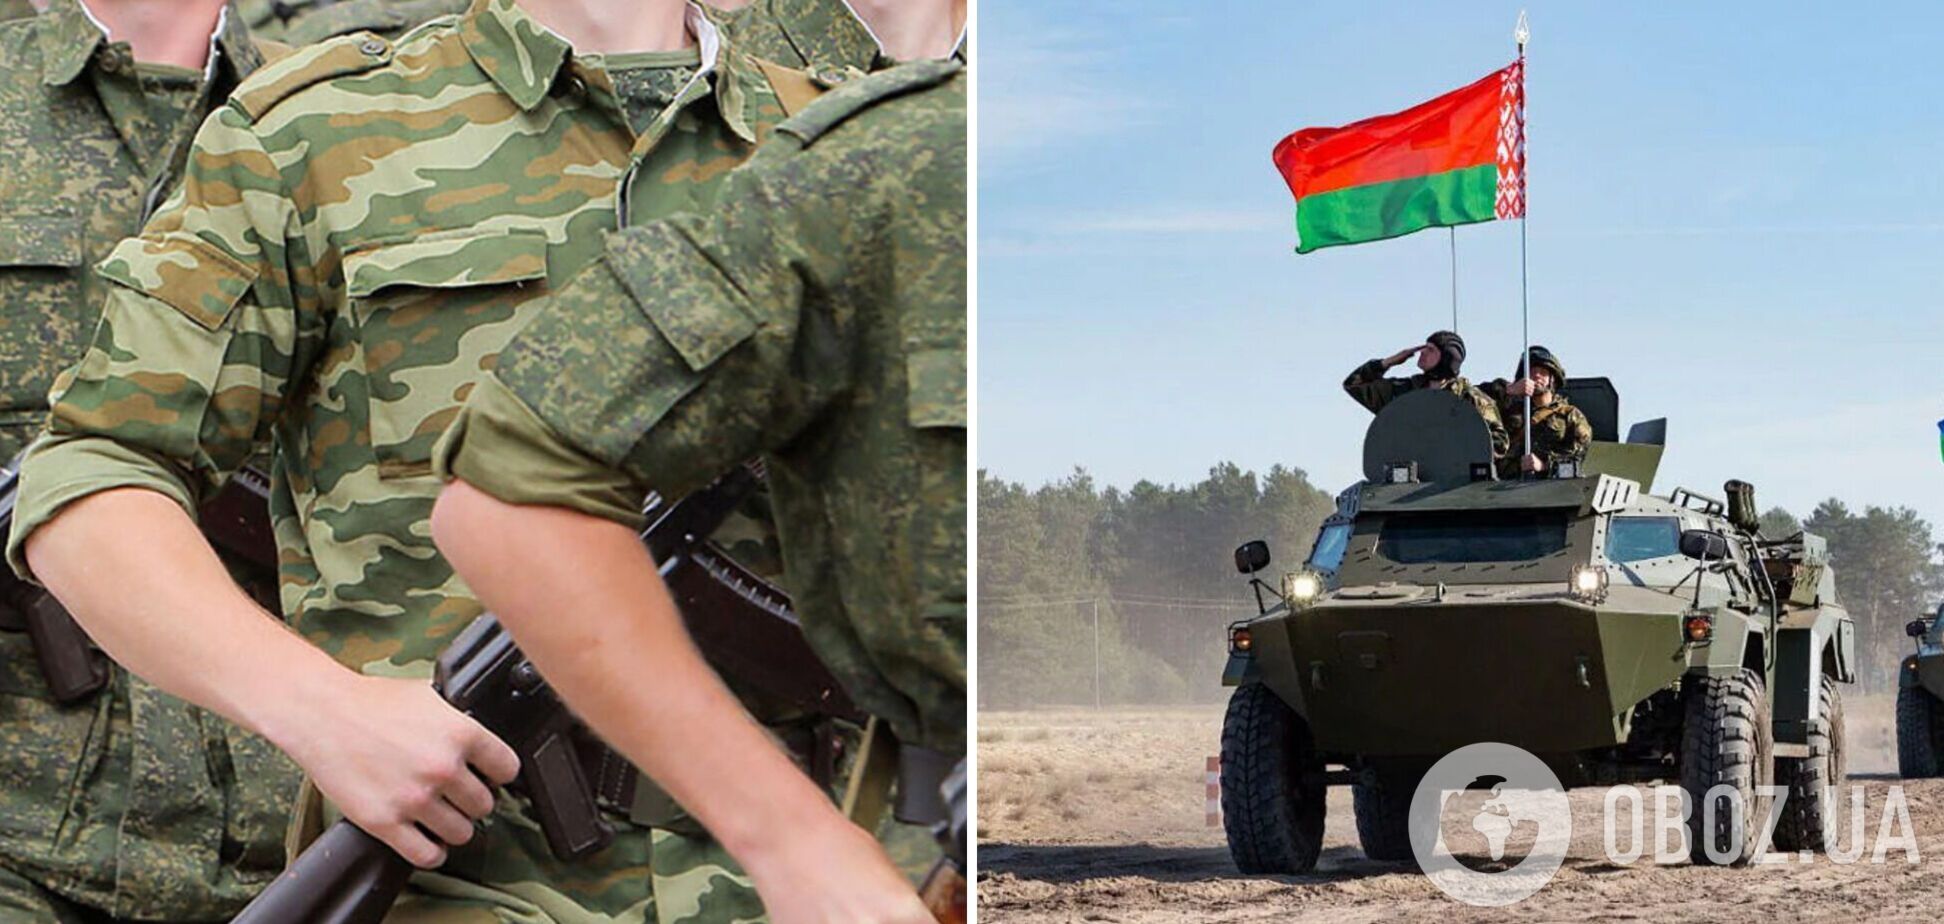 Учения военнослужащих в Беларуси